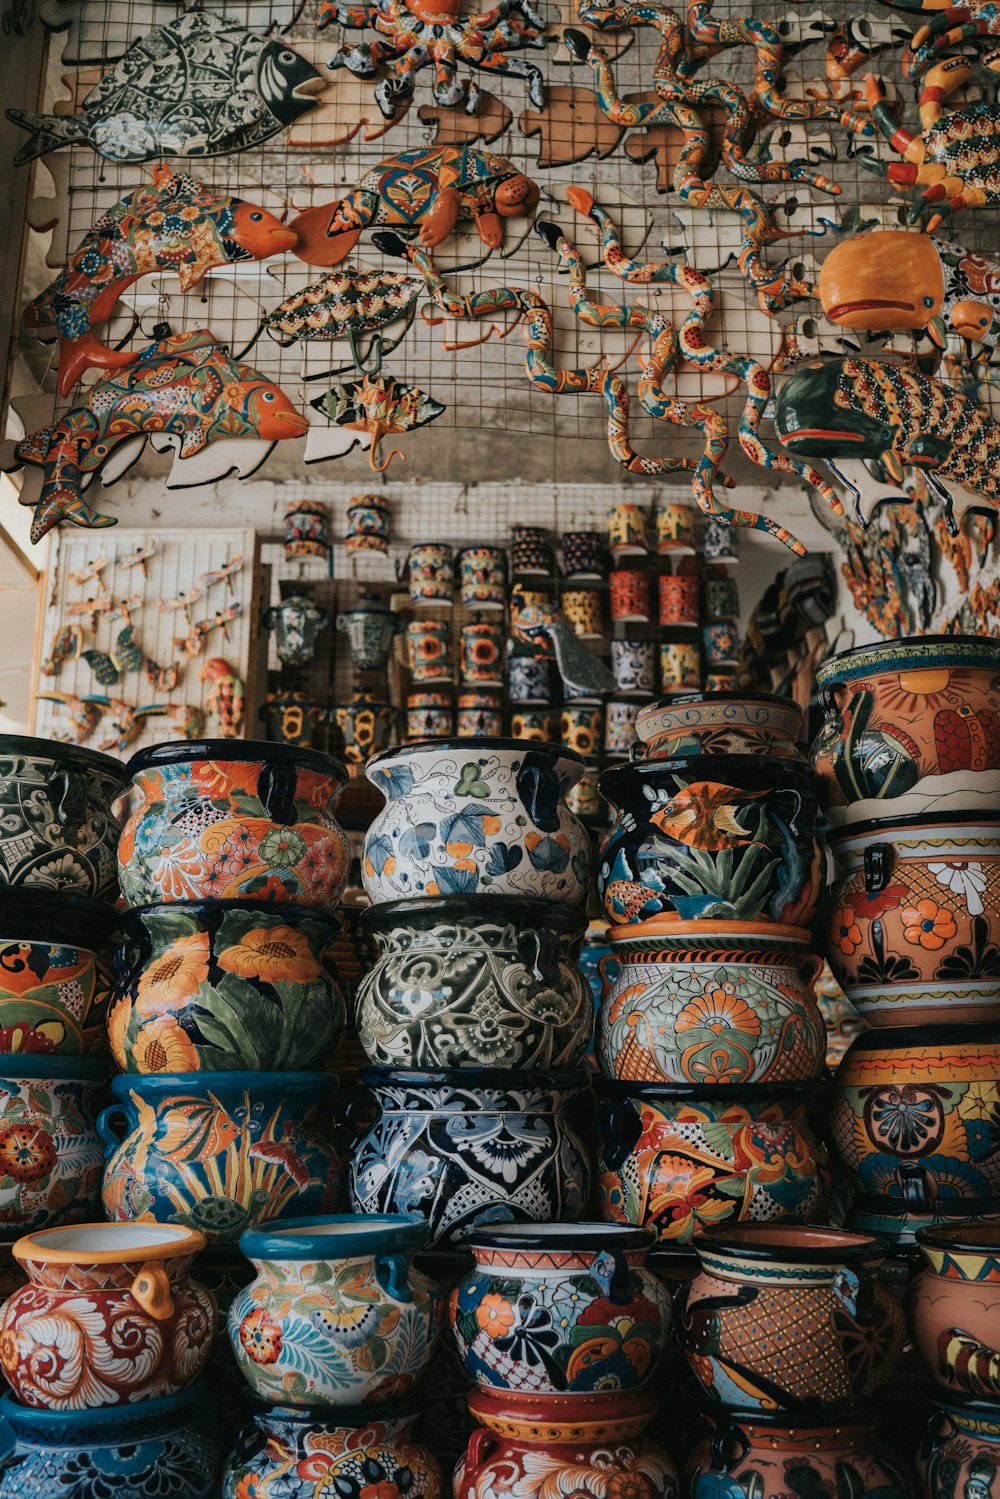 Vasijas de barro de colores variados dispuestas juntas